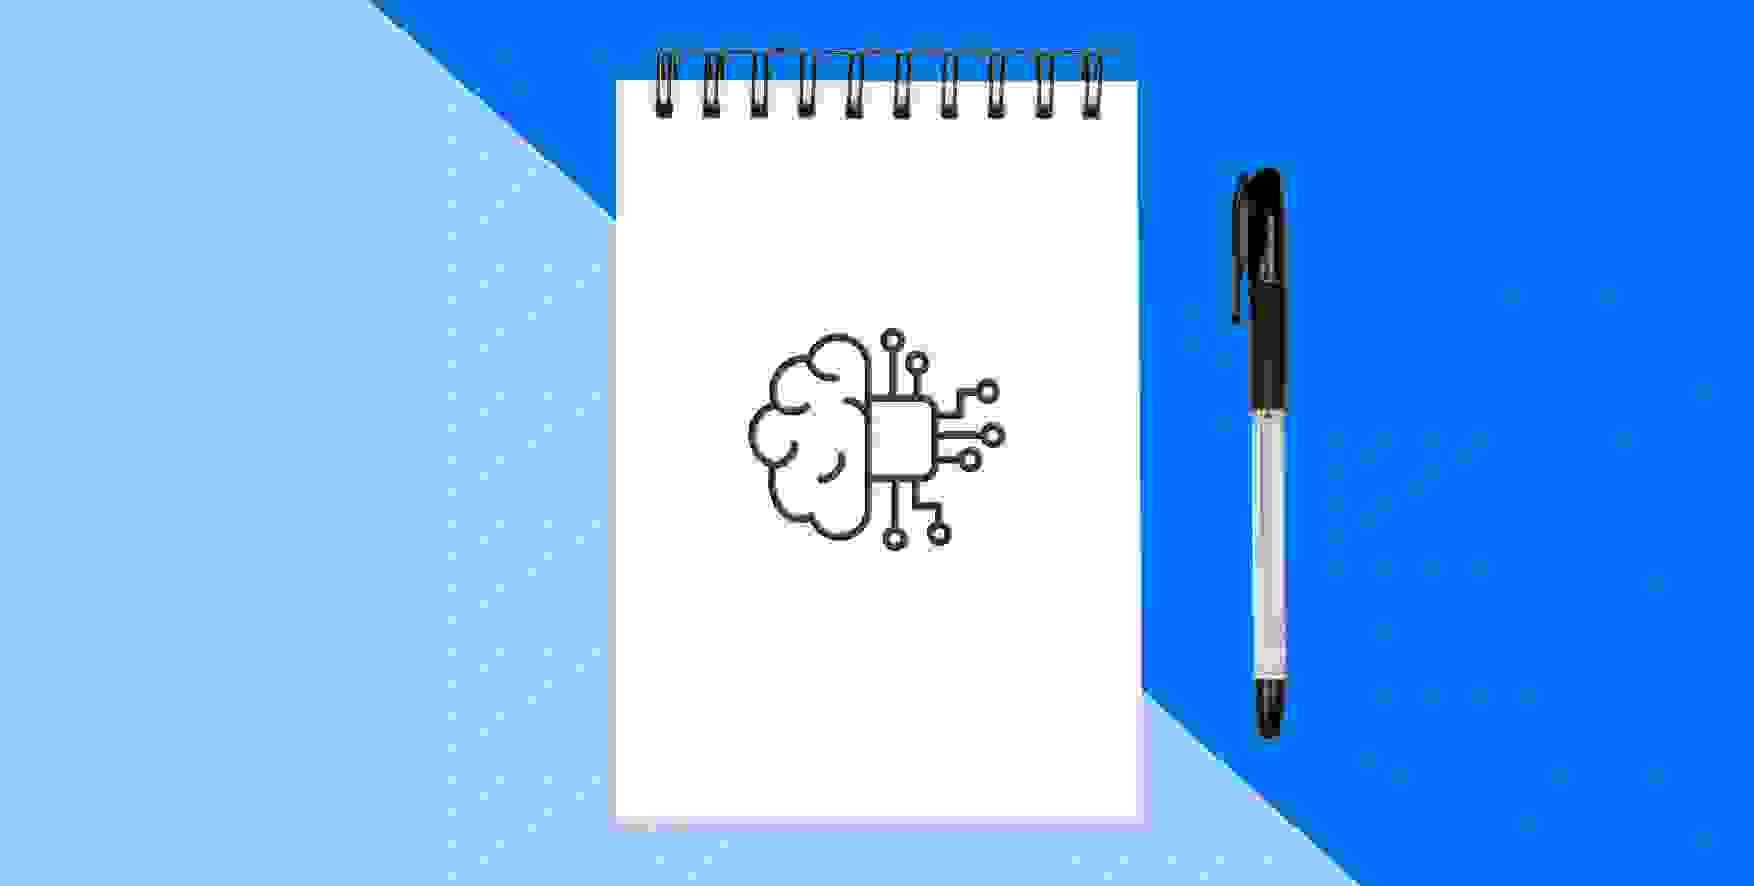 símbolo de aprendizaje automático en un bloc de notas